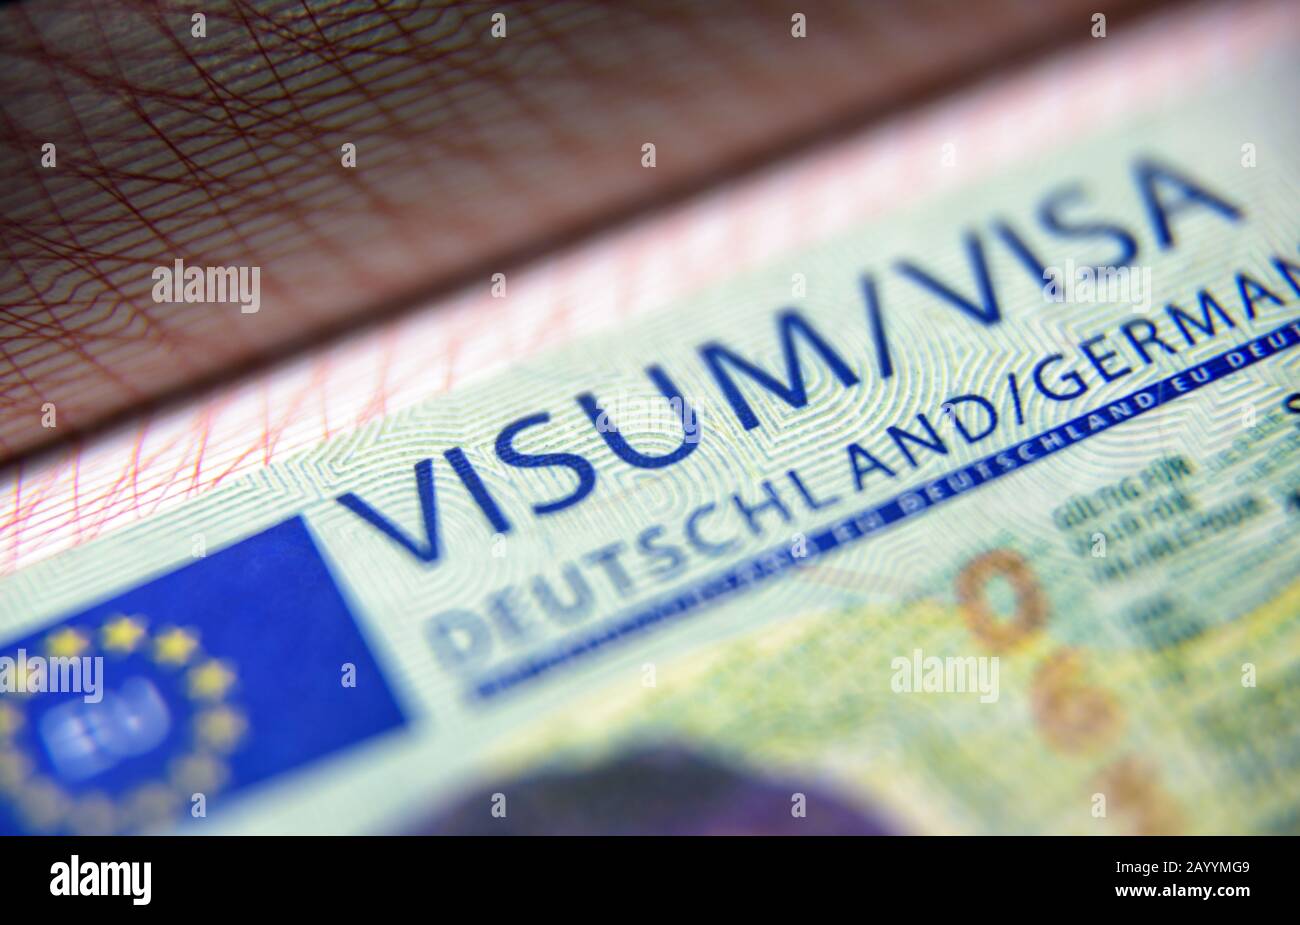 Cachet Visa dans la fermeture du passeport. Visa de visiteur allemand au contrôle des frontières. Vue macro du visa Schengen pour le tourisme et les voyages dans l'UE. Document pour multipage Banque D'Images